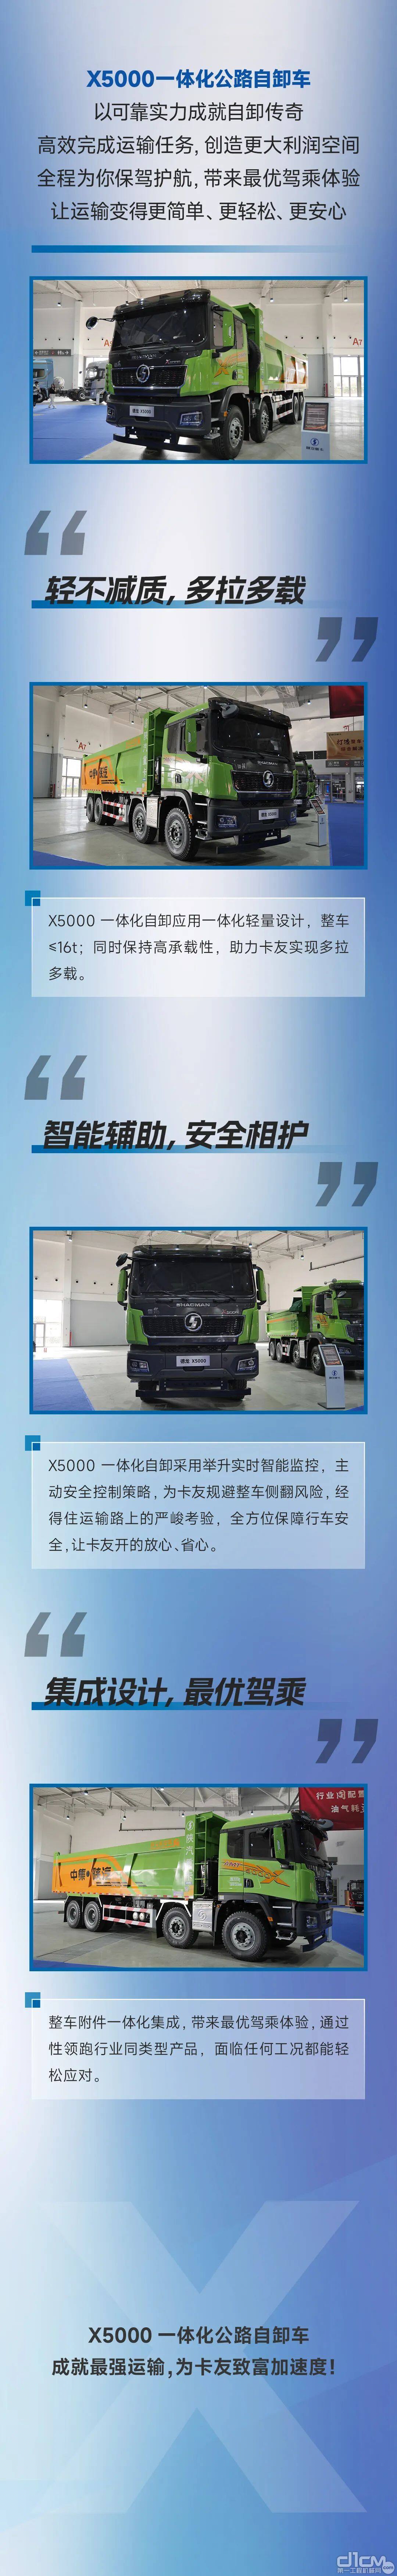 中集陕汽：X5000一体化公路自卸车，运输无“卸”可击